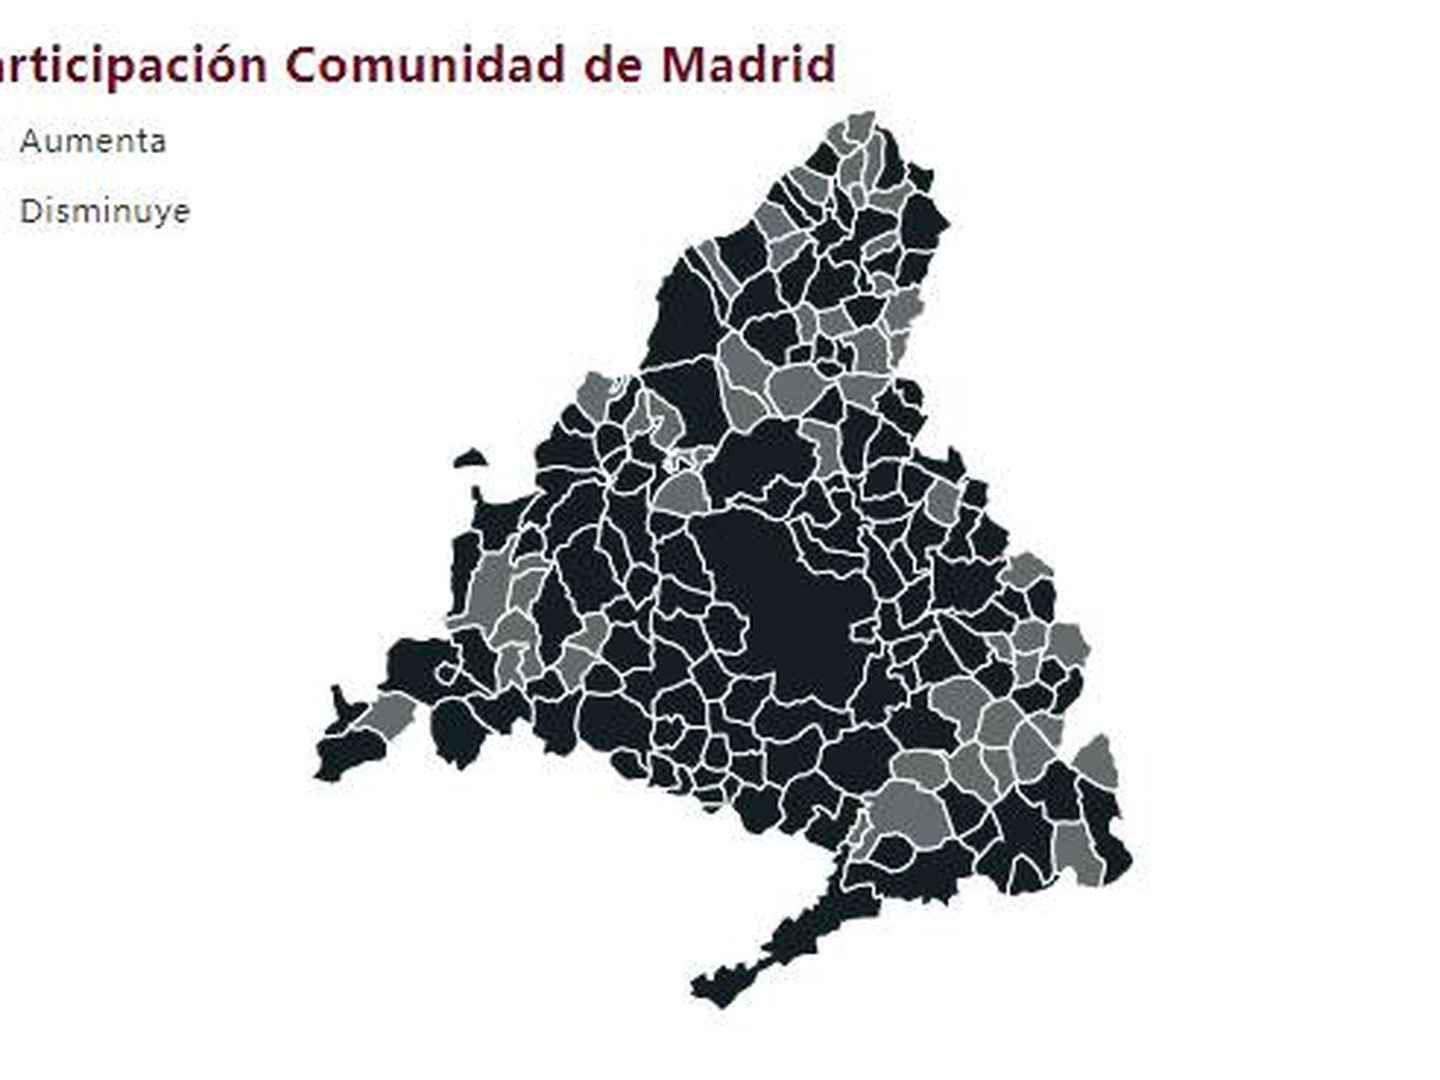 Participación en la Comunidad de Madrid a las 13 horas.